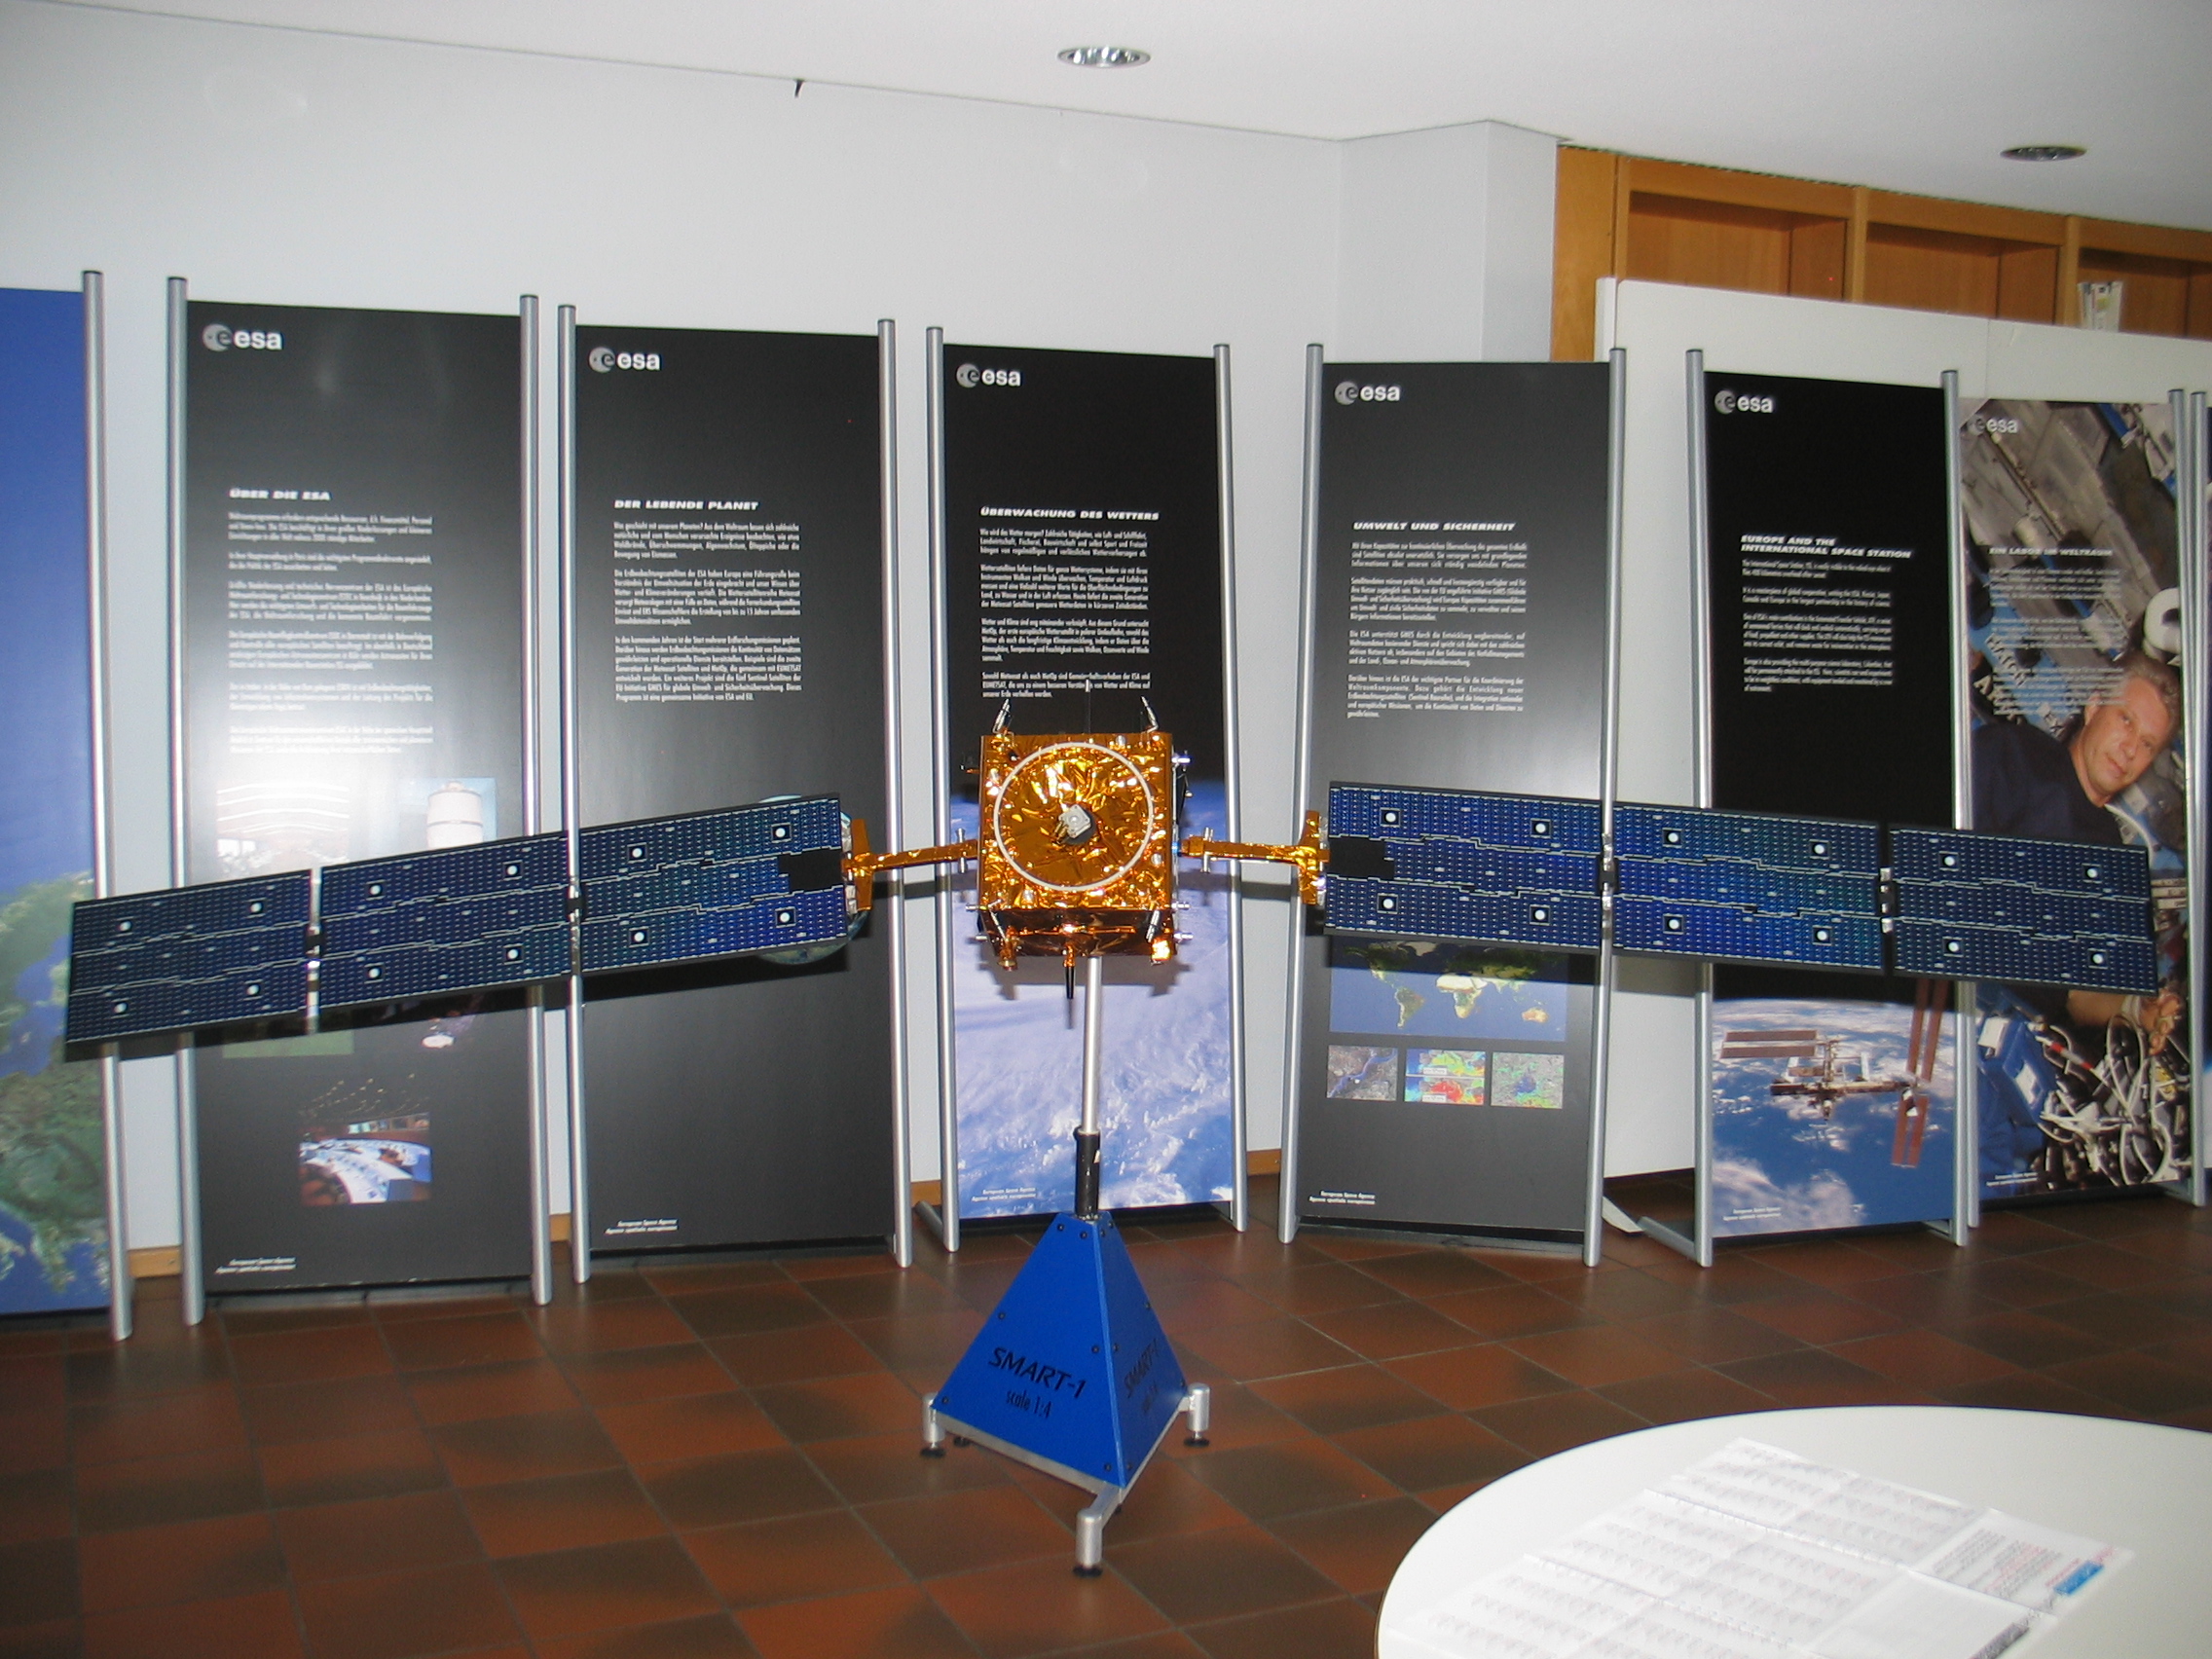 Astronomietag 2008, Raumfahrtaustellung in der VHS Bad Homburg.